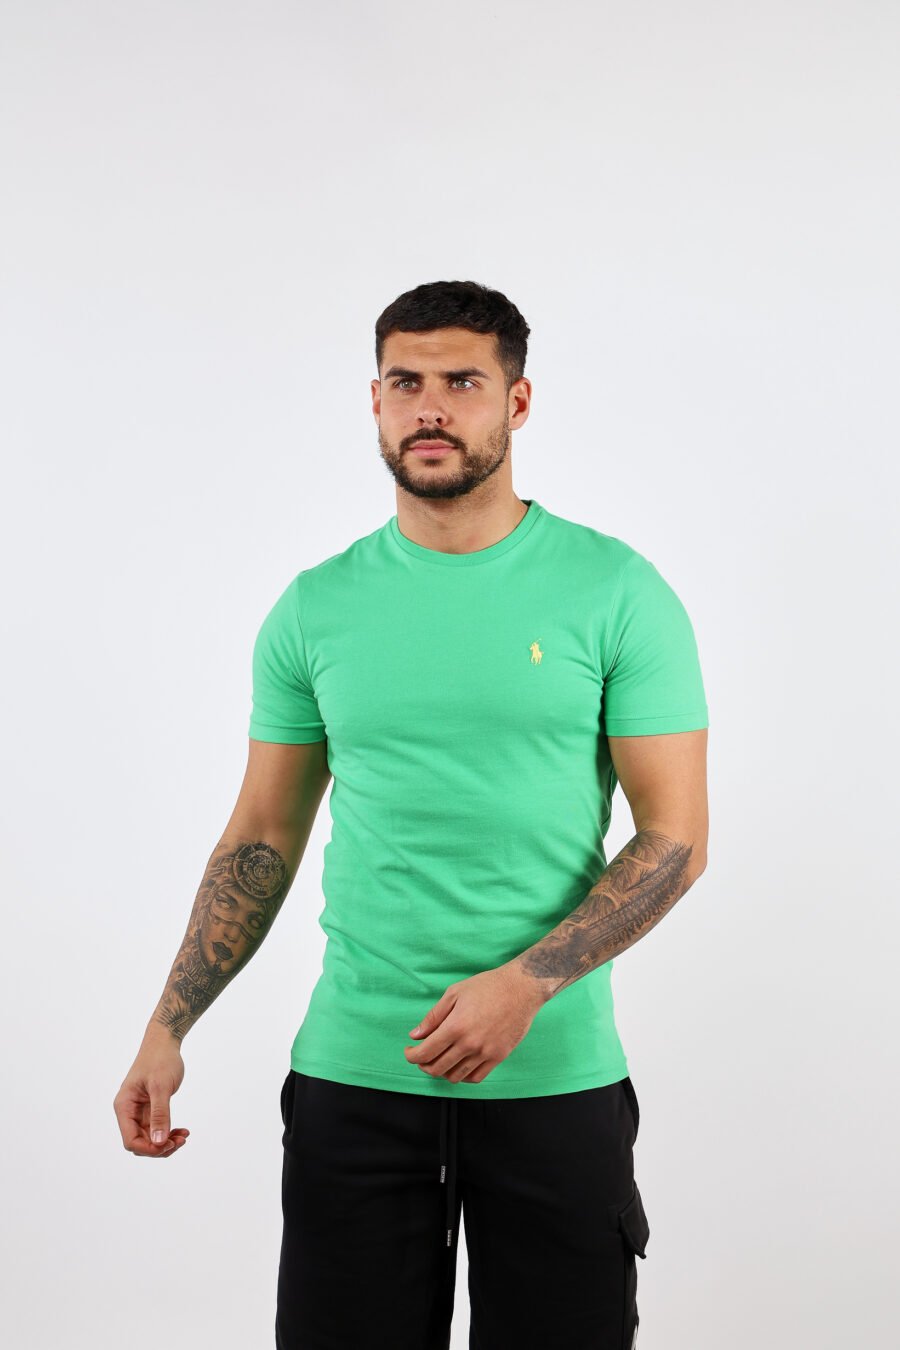 Camiseta verde y amarilla con minilogo "polo" - BLS Fashion 301